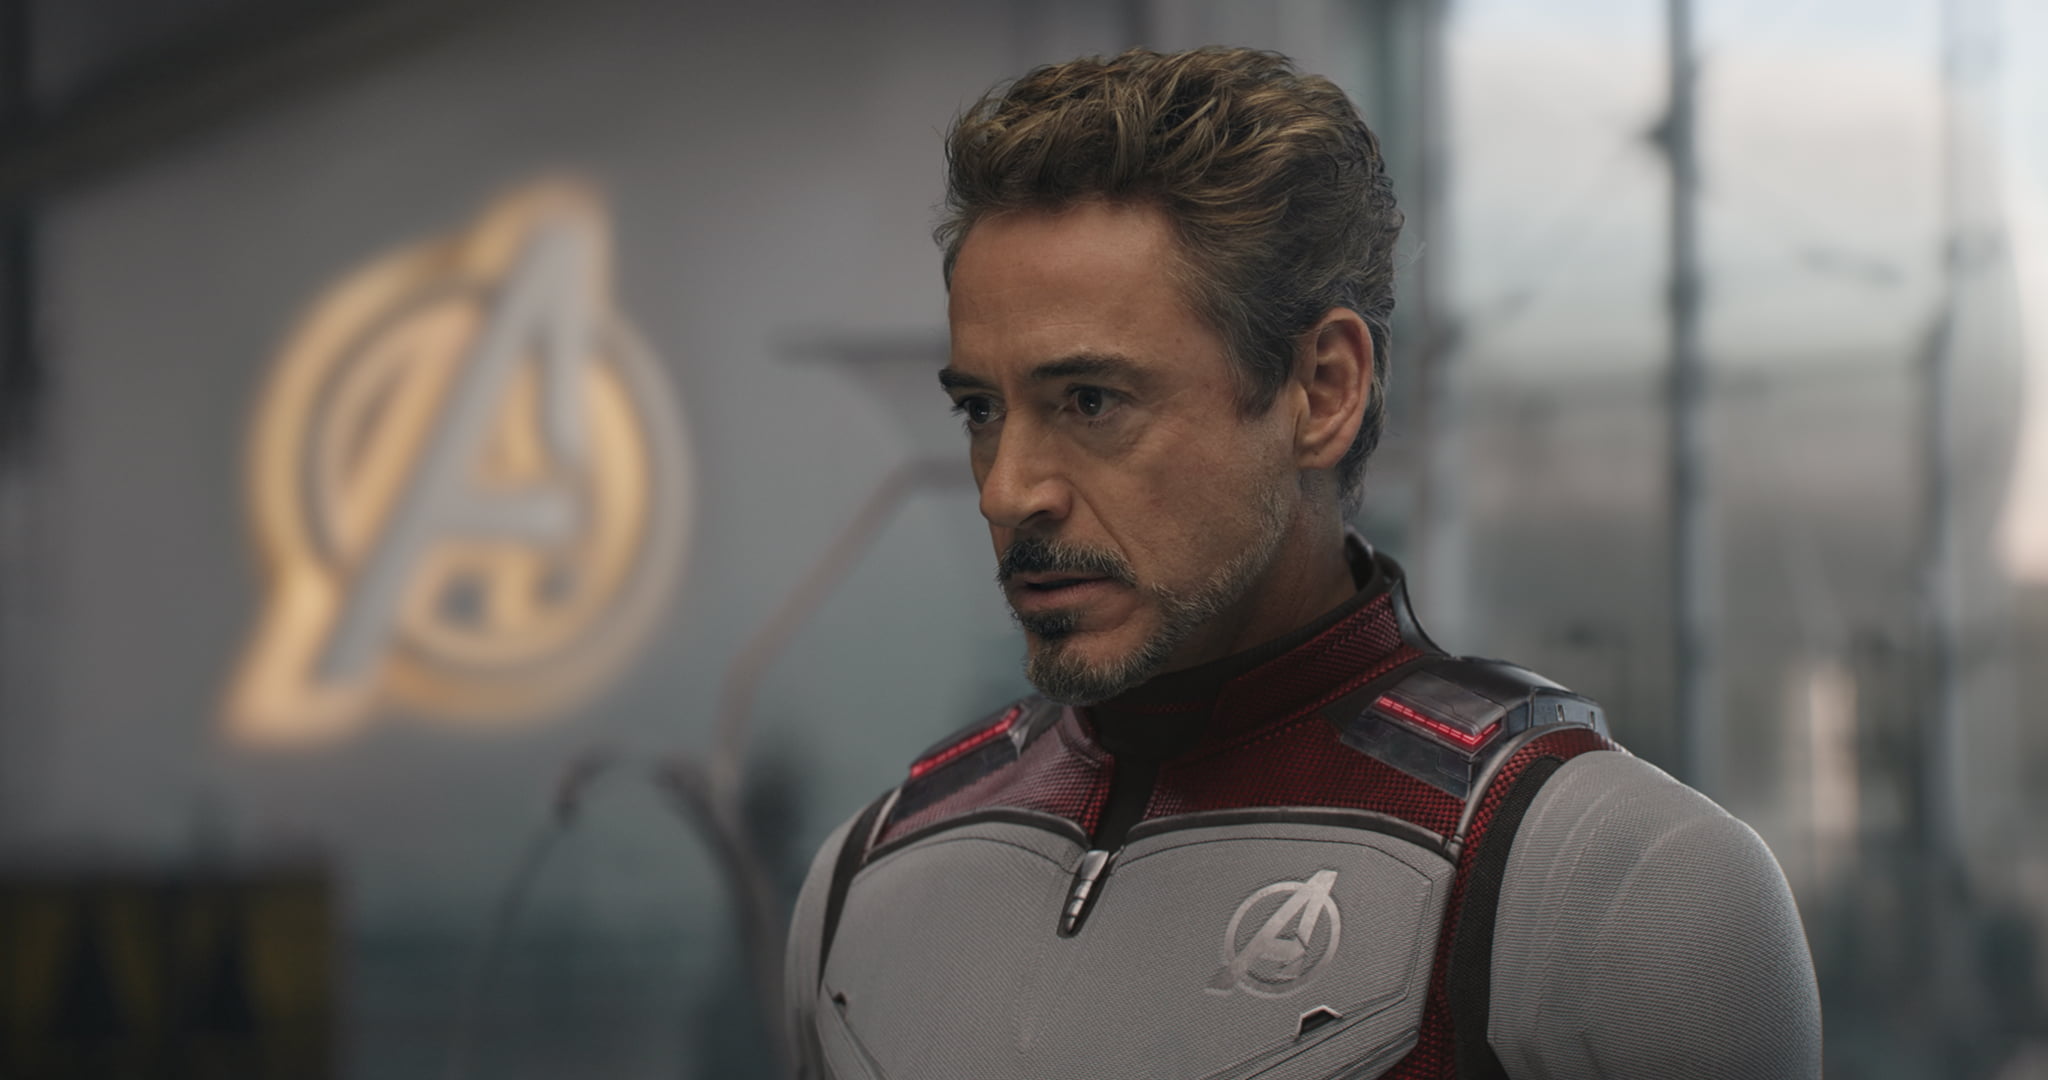 The Avengers, Avengers EndGame, Iron Man, Robert Downey Jr.